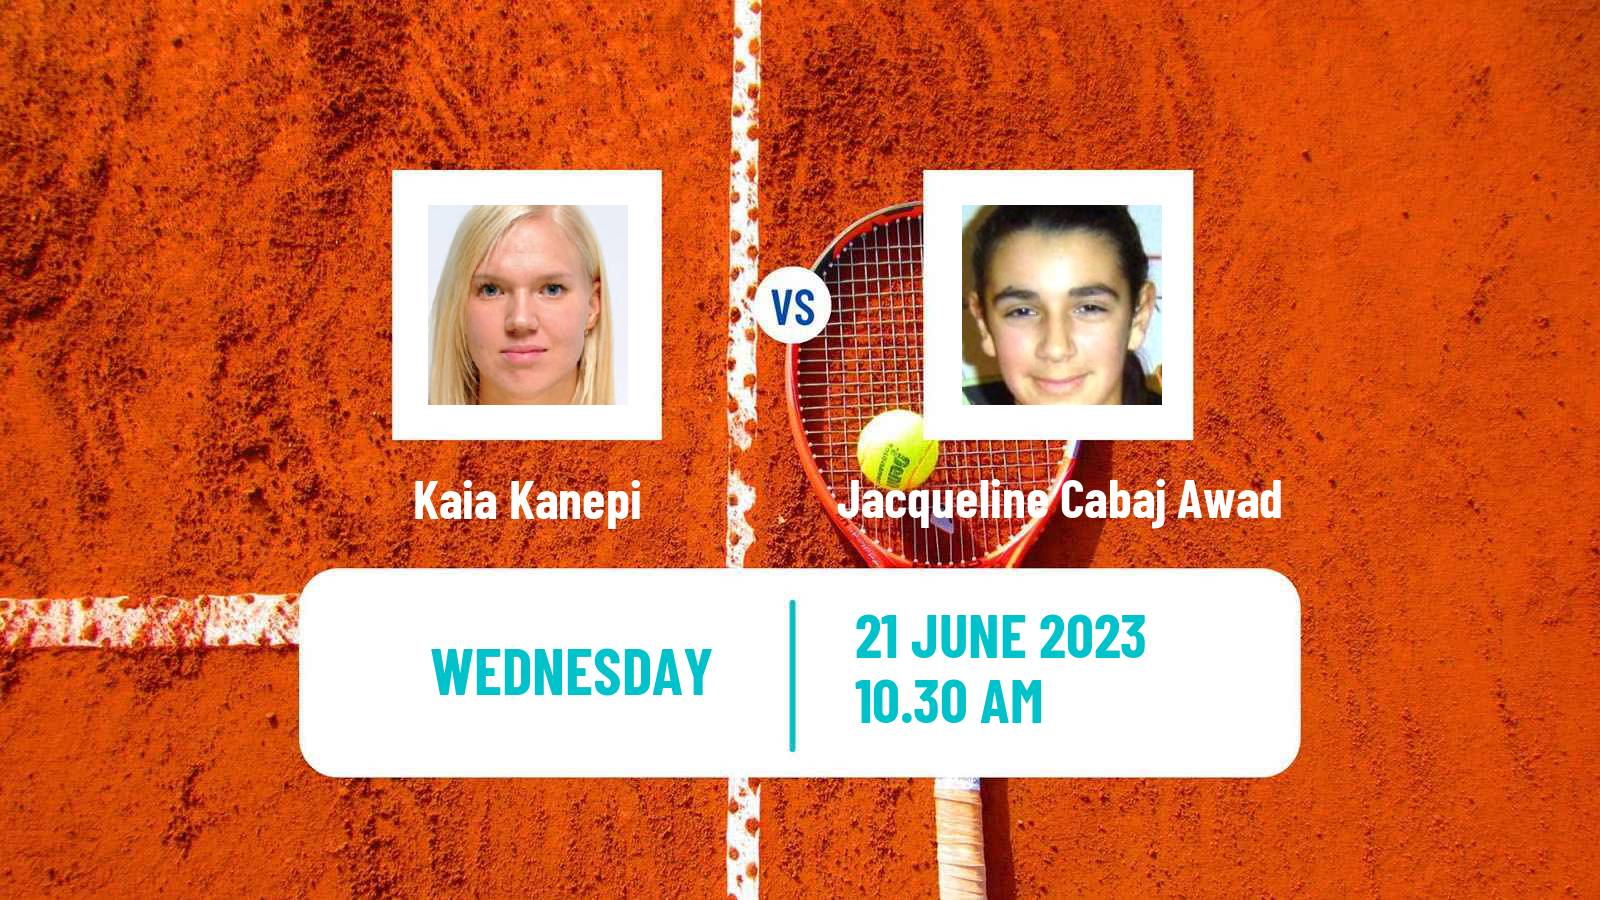 Tennis ITF W40 Ystad Women Kaia Kanepi - Jacqueline Cabaj Awad